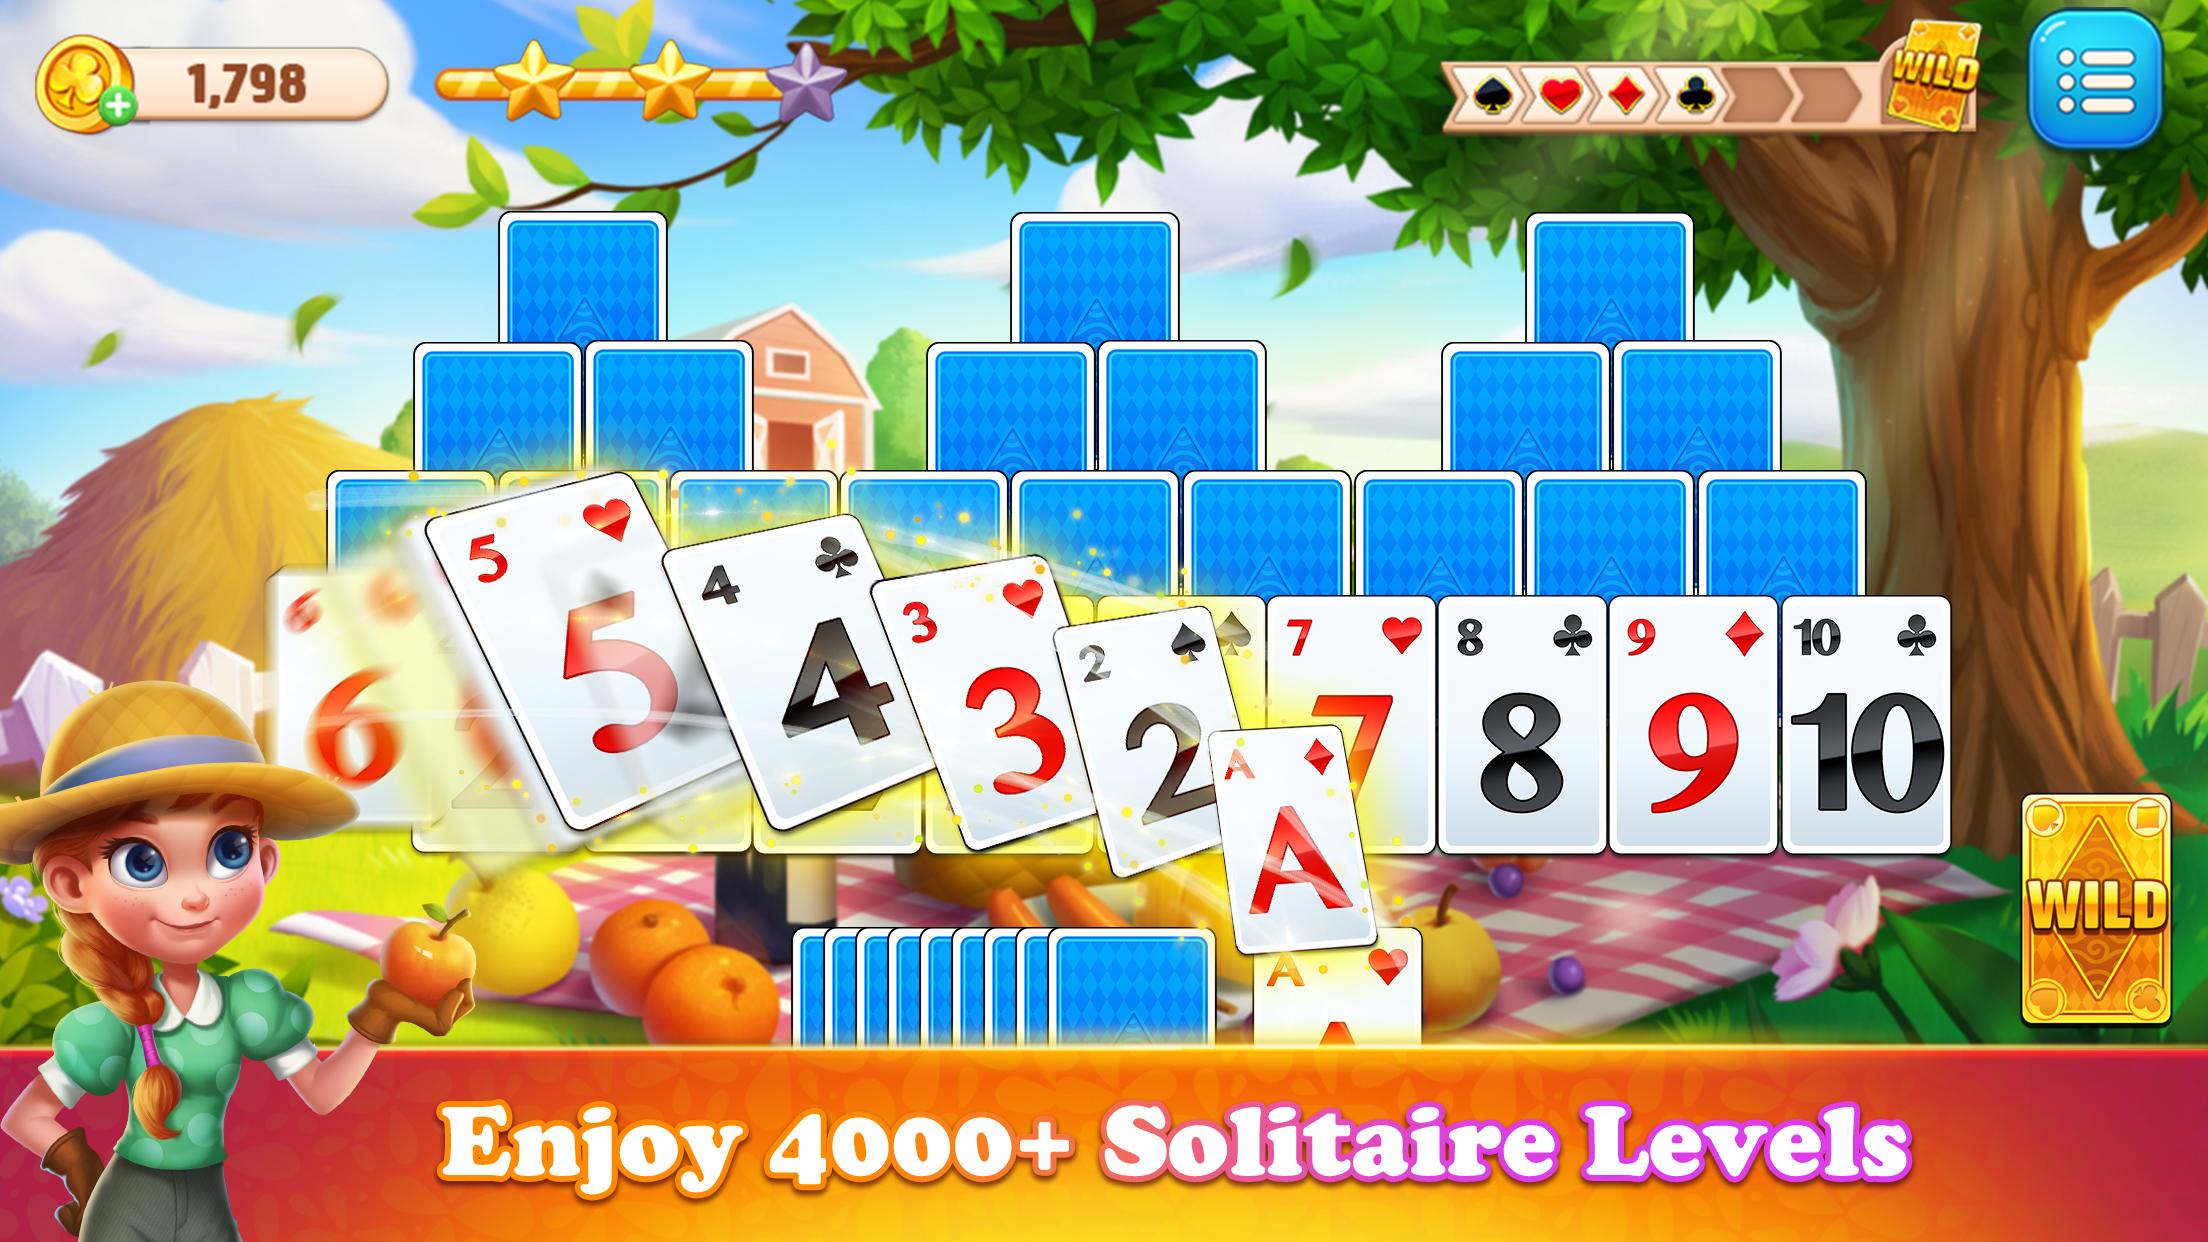 Solitaire TriPeaks Journey: jogo de cartas grátis